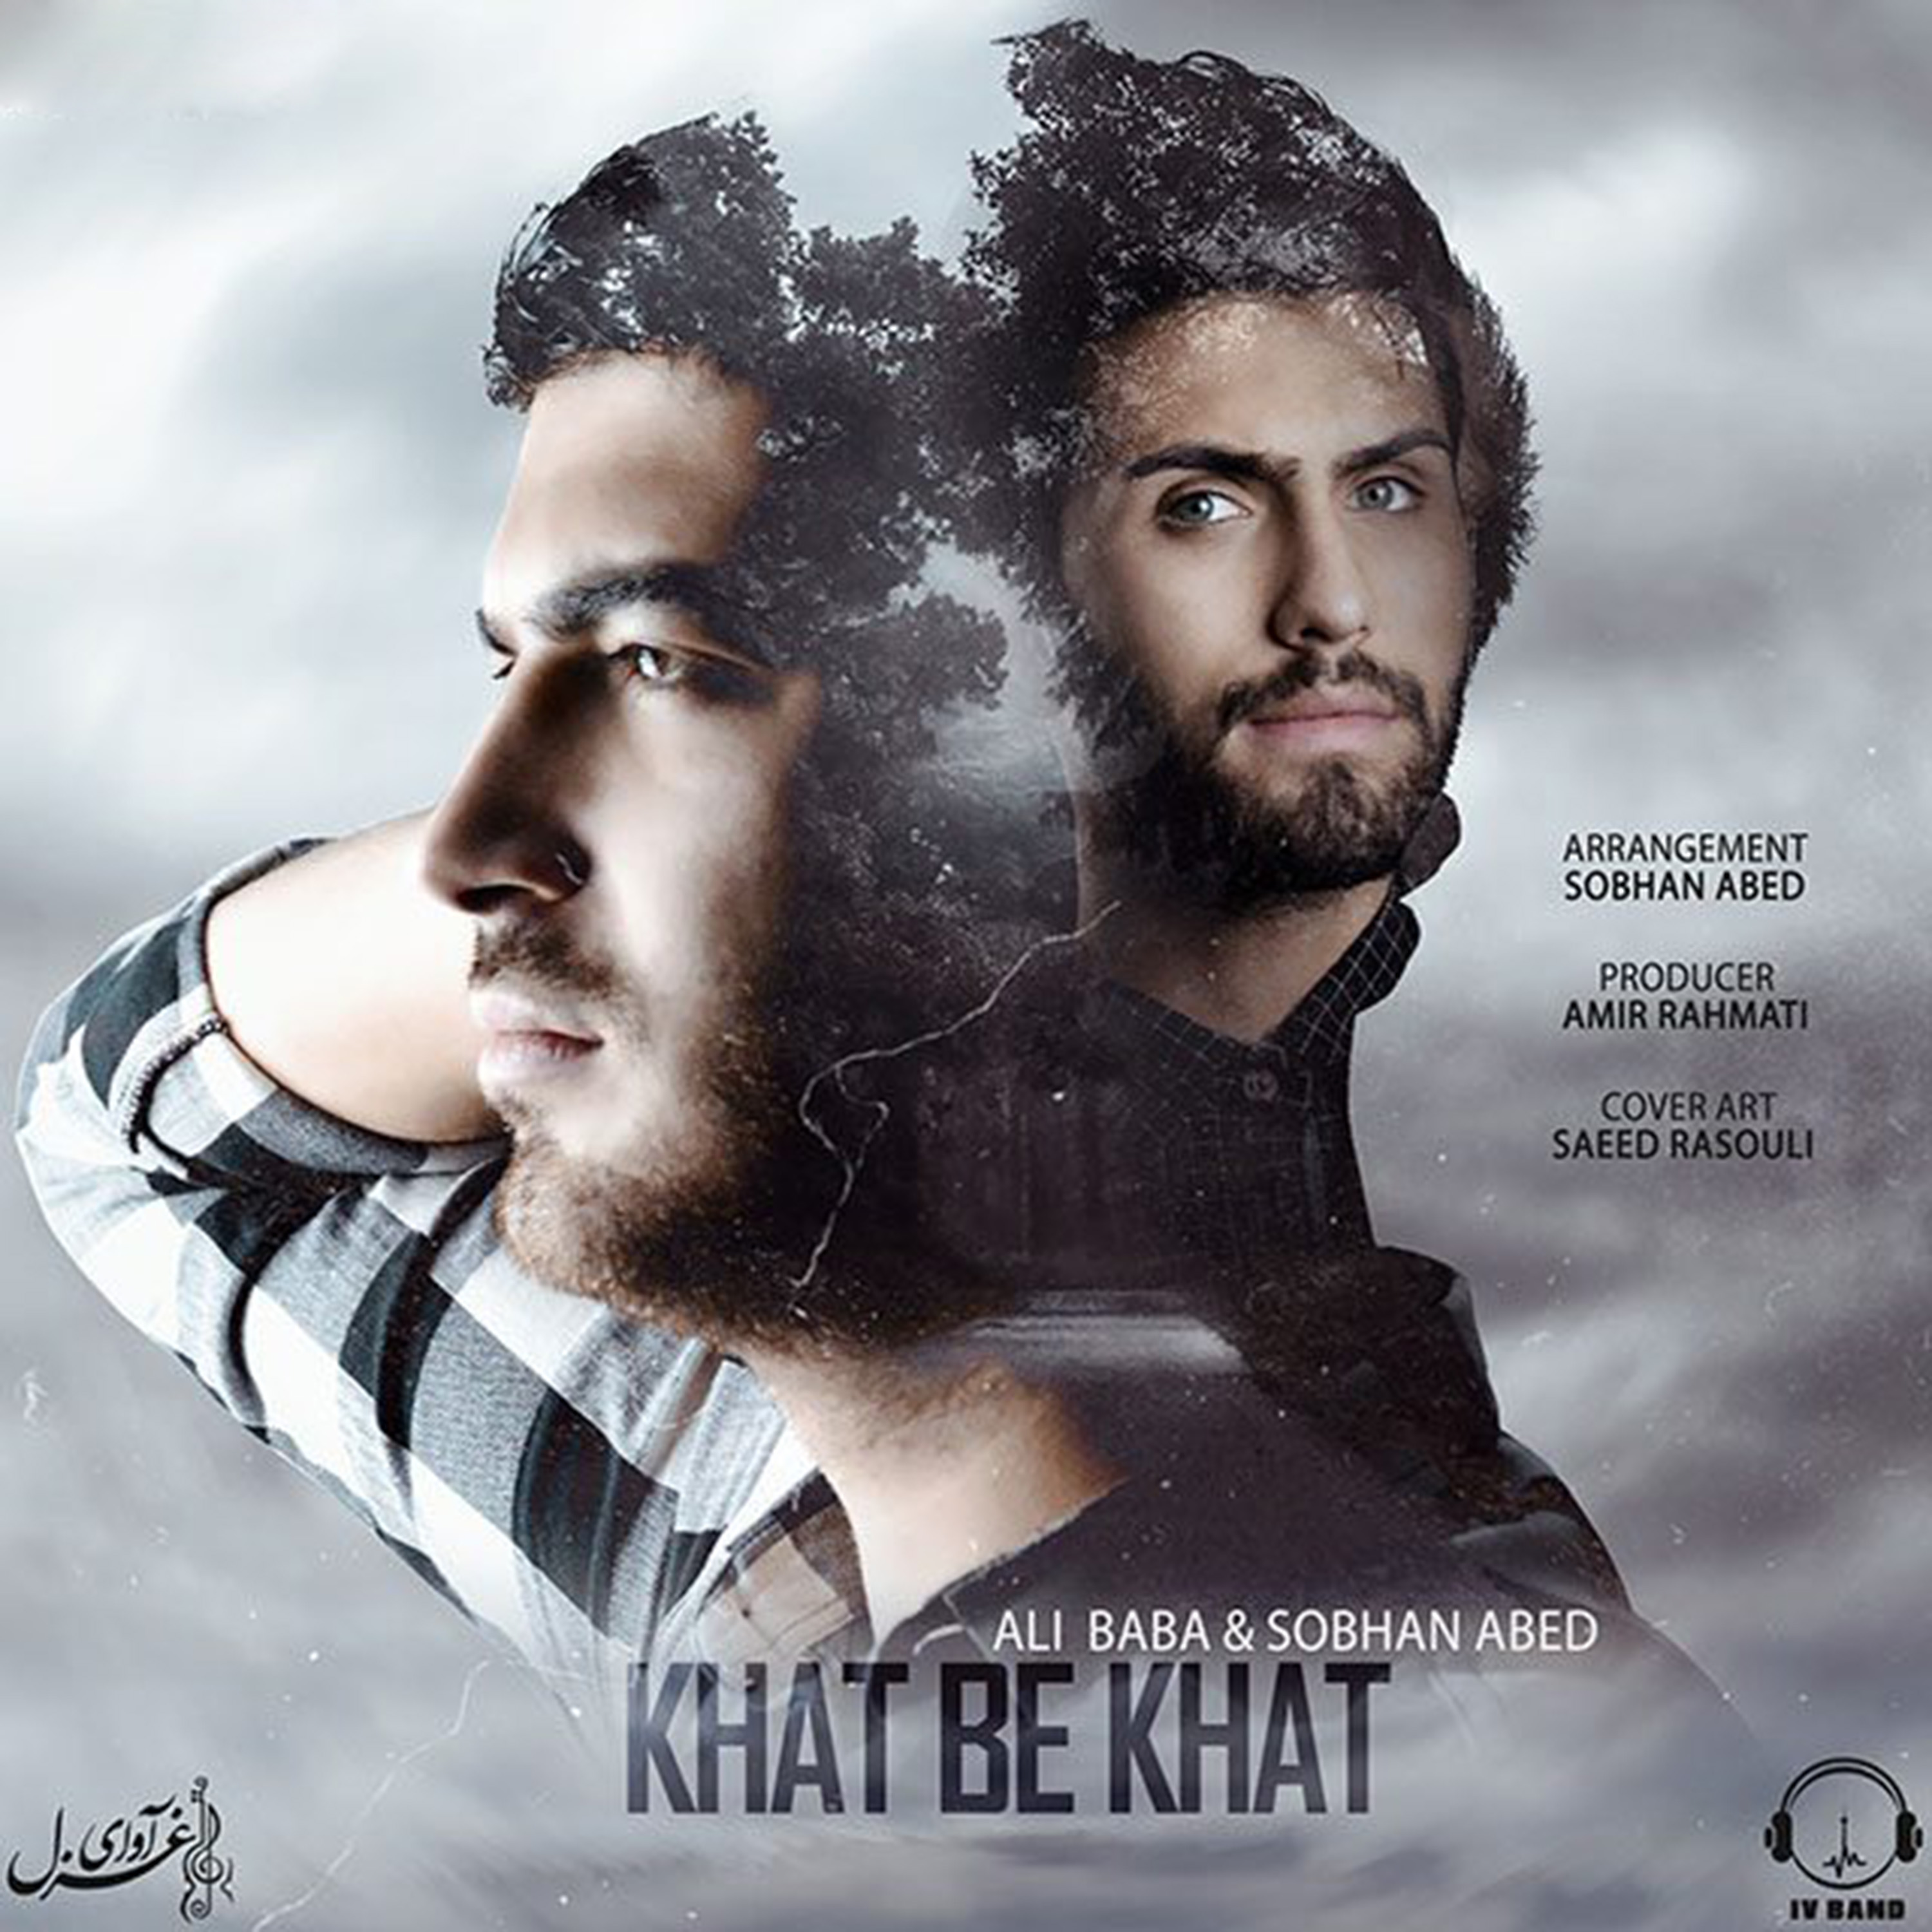  دانلود آهنگ جدید علی بابا - خط به خط | Download New Music By Ali Baba - Khat Be Khat (feat. Sobhan Abed)